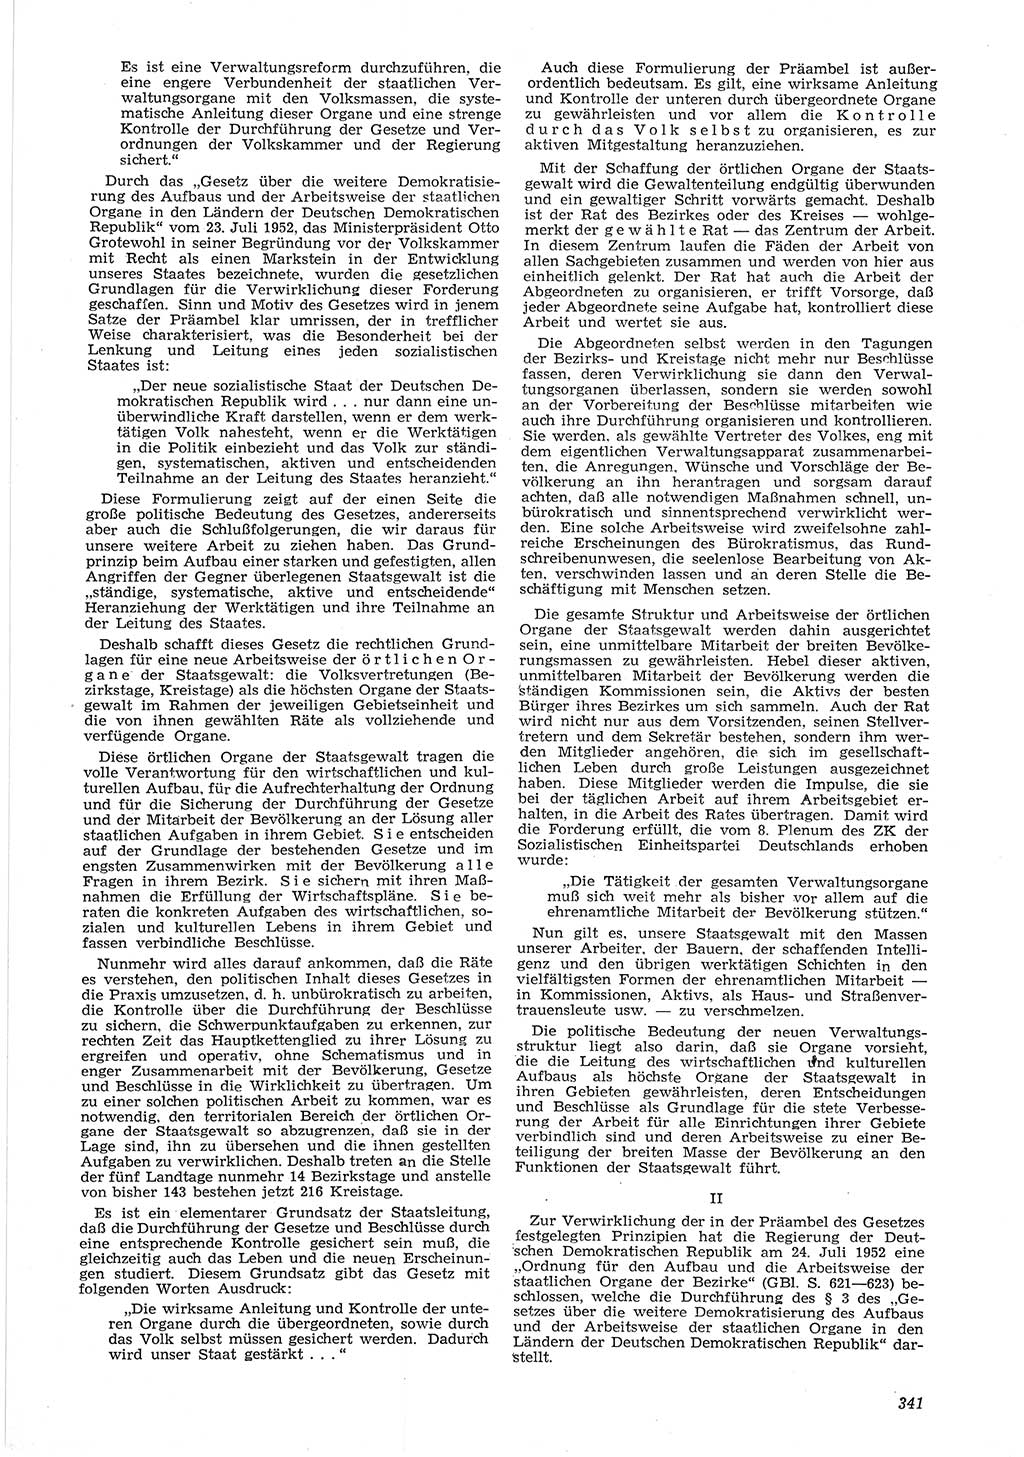 Neue Justiz (NJ), Zeitschrift für Recht und Rechtswissenschaft [Deutsche Demokratische Republik (DDR)], 6. Jahrgang 1952, Seite 341 (NJ DDR 1952, S. 341)